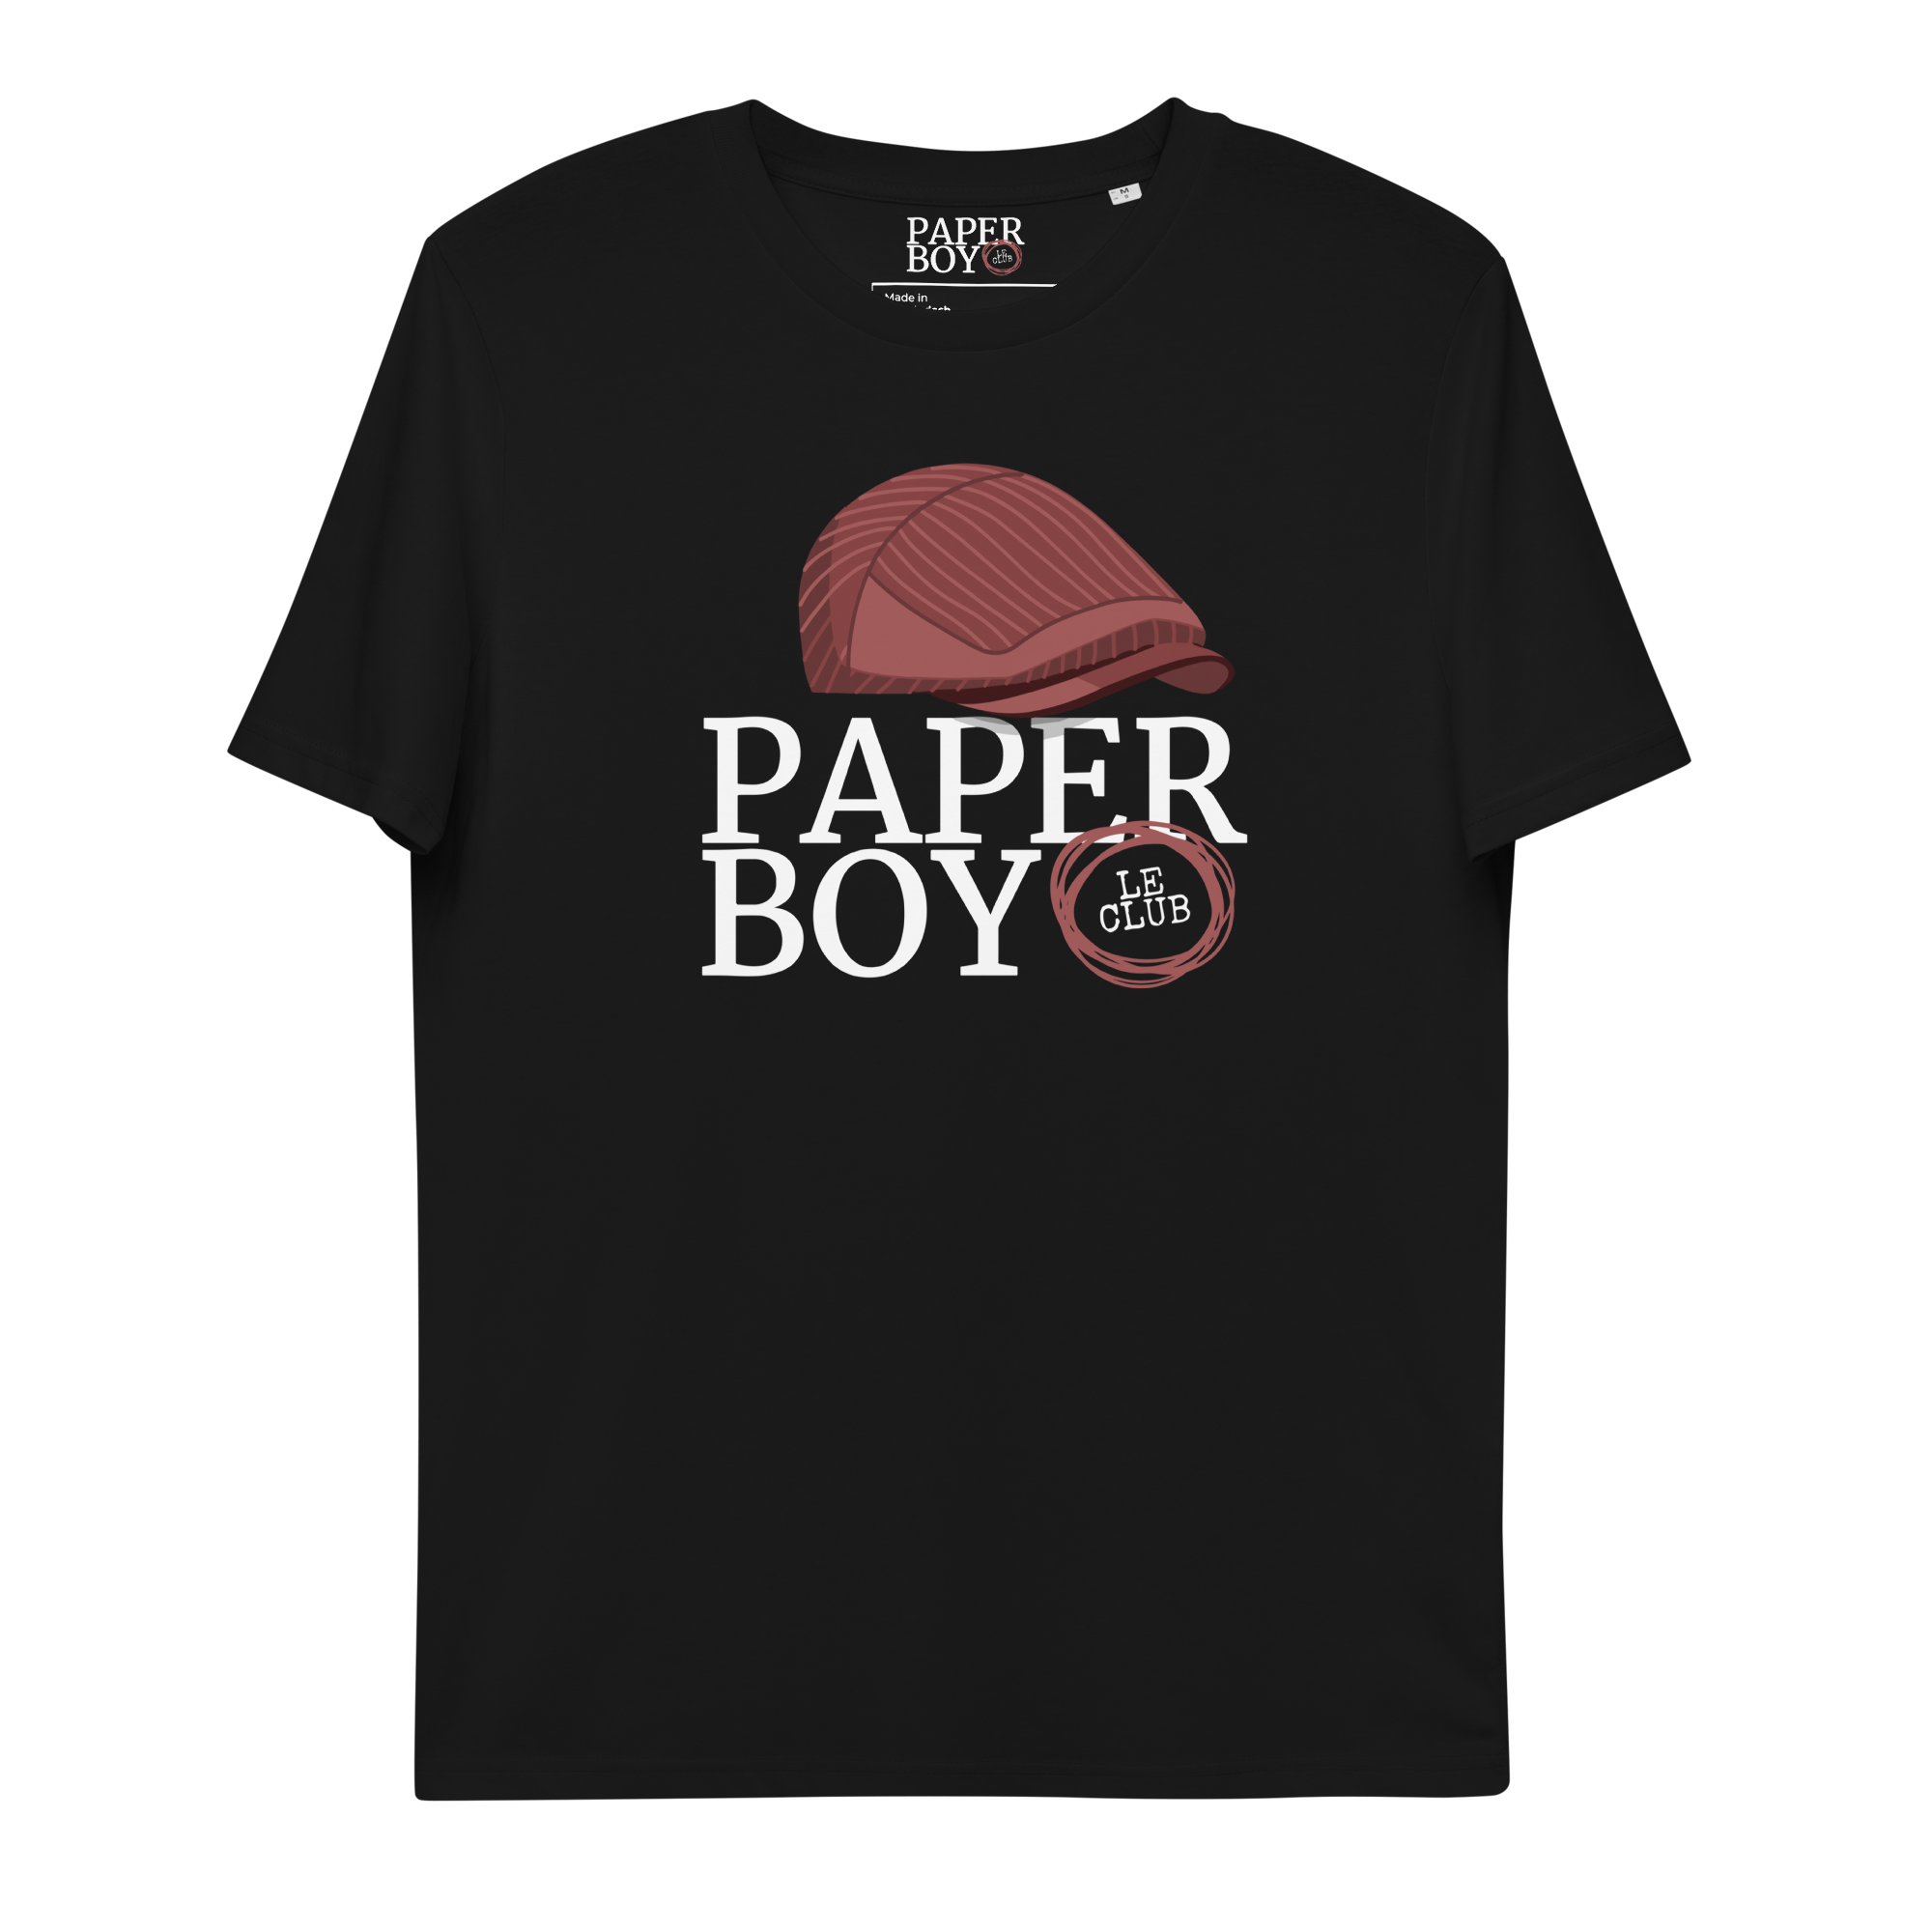 Paperboy Le Club Unisex organic cotton t-shirt